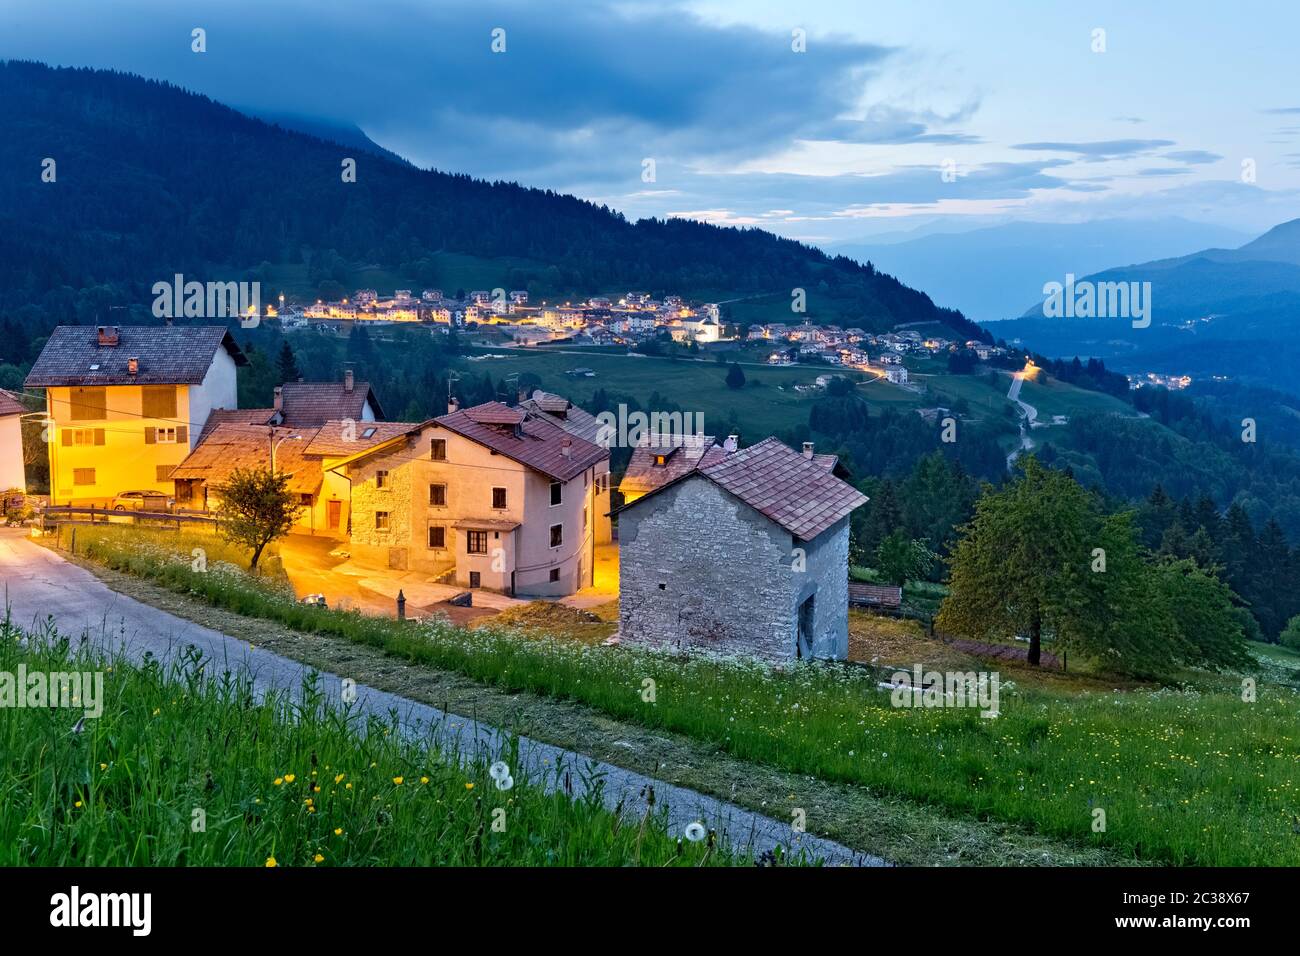 Im Dorf Perpruneri auf der Alpe Cimbra fällt die Nacht. Im Hintergrund das Dorf San Sebastiano. Folgaria, Trentino, Italien. Stockfoto